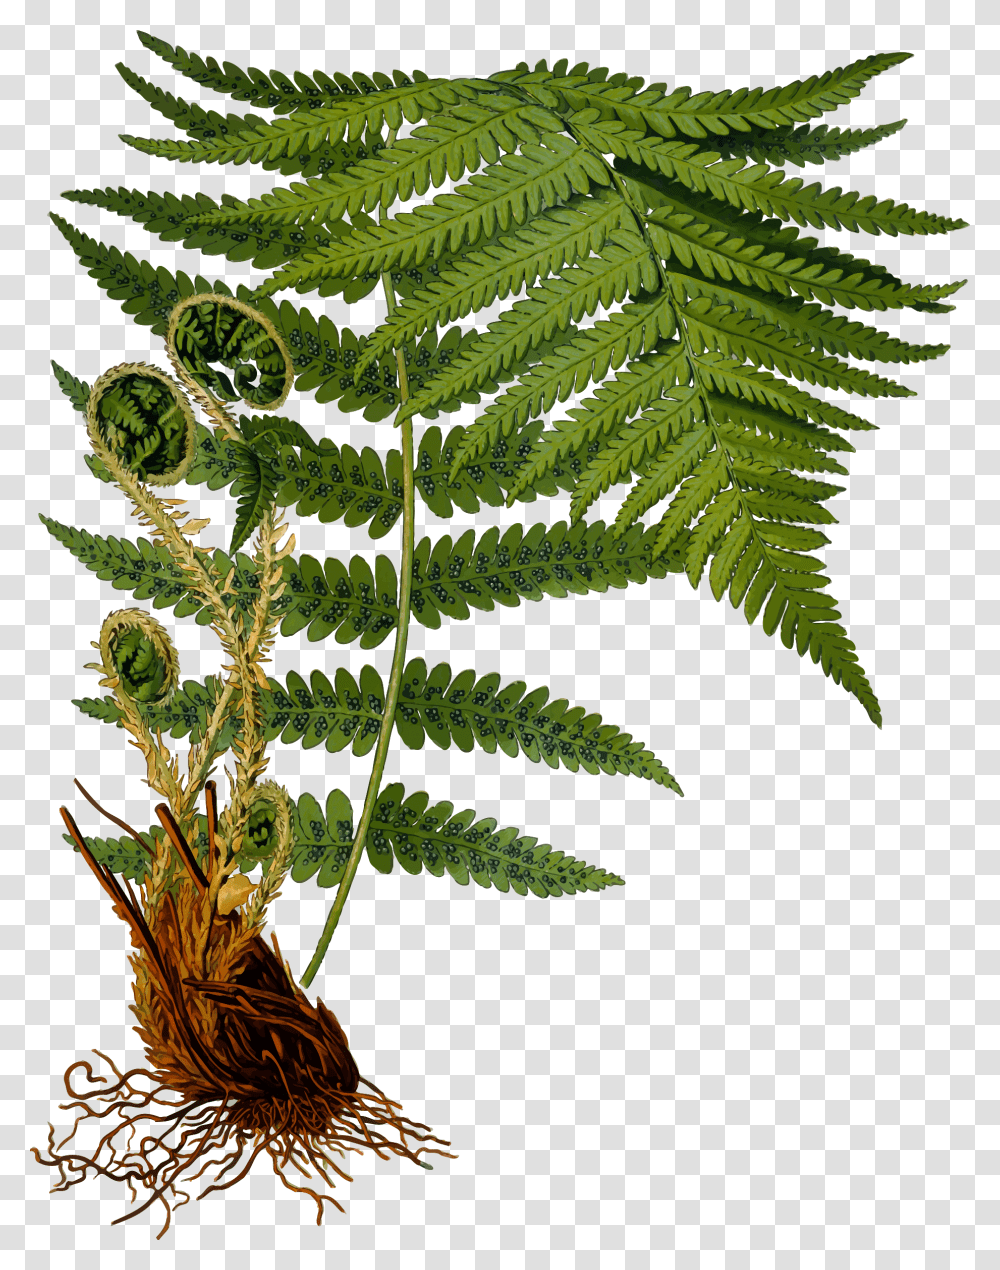 Male Fern 2 Clip Arts Fern Botanical Illustration, Plant Transparent Png